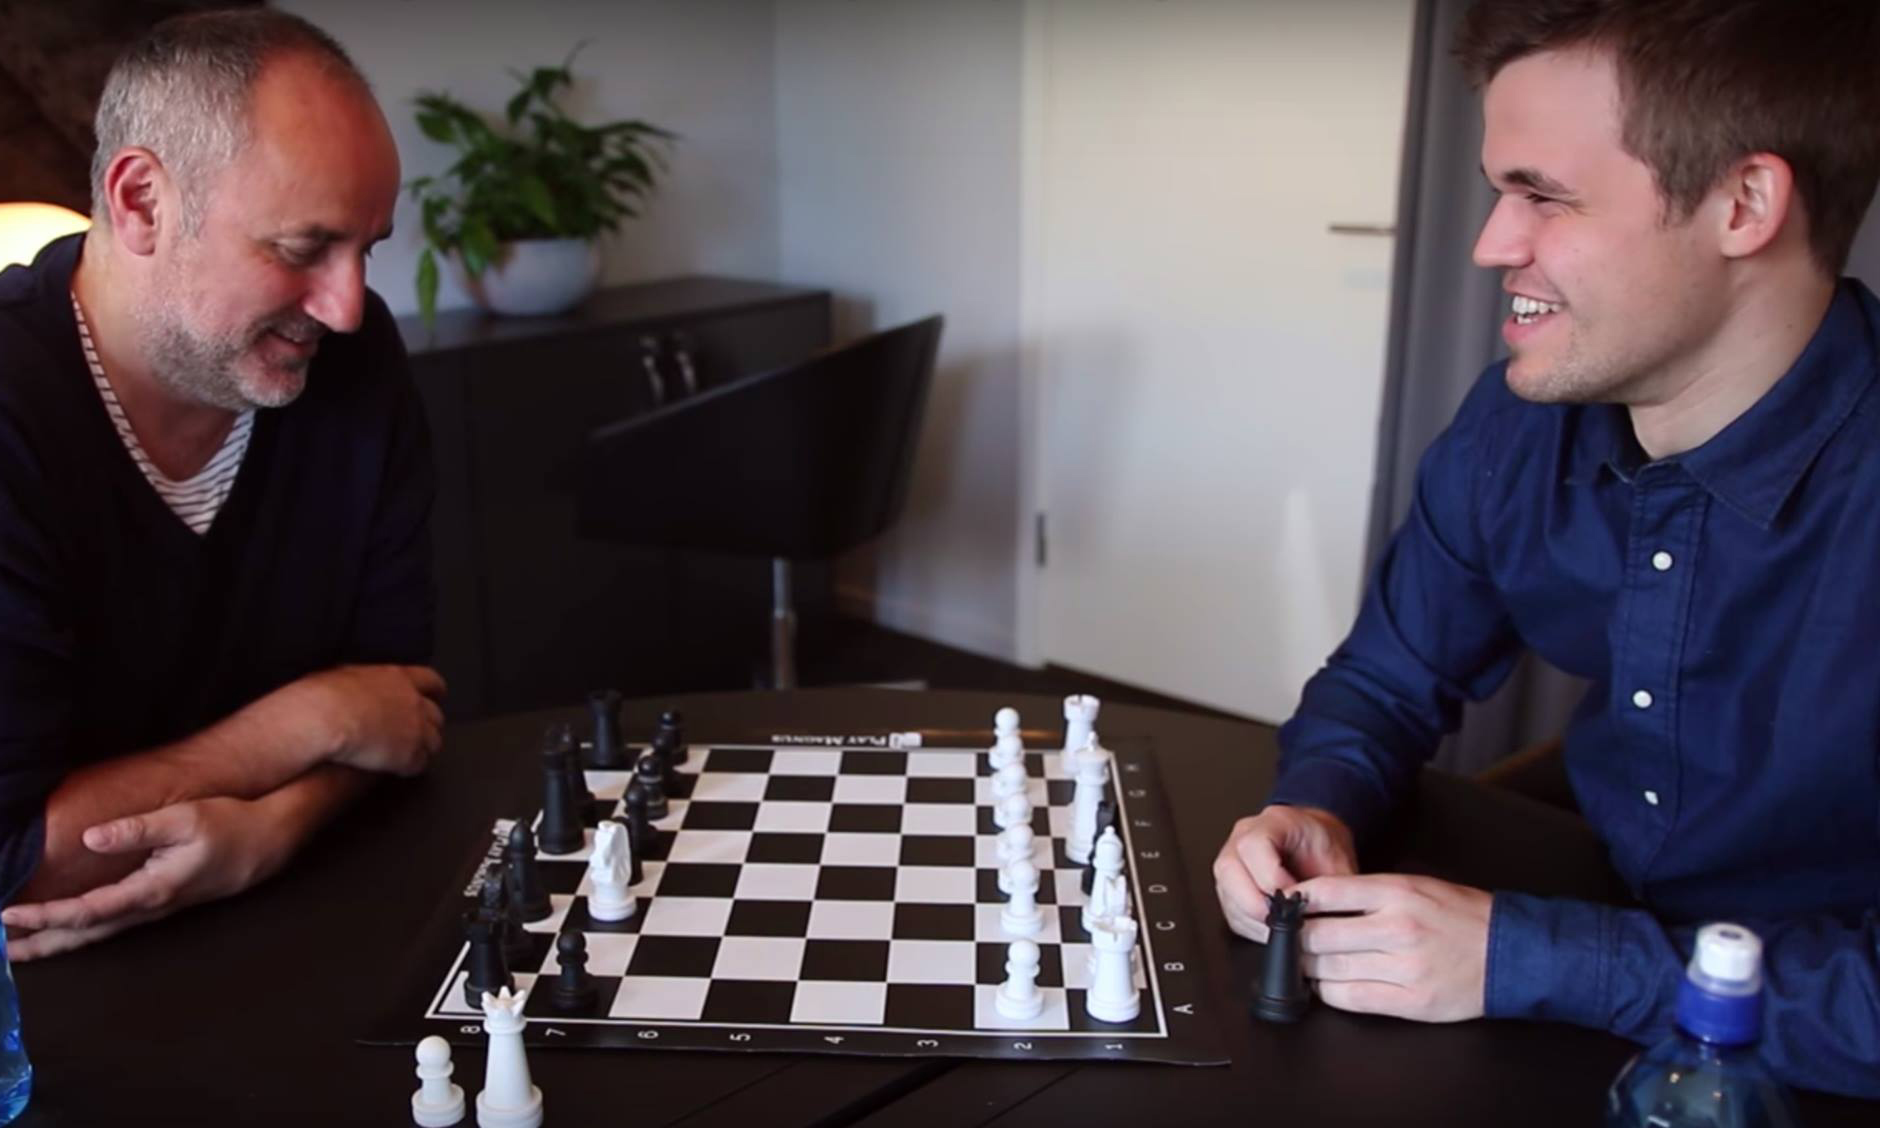 When a young Magnus Carlsen challenged Garry Kasparov 